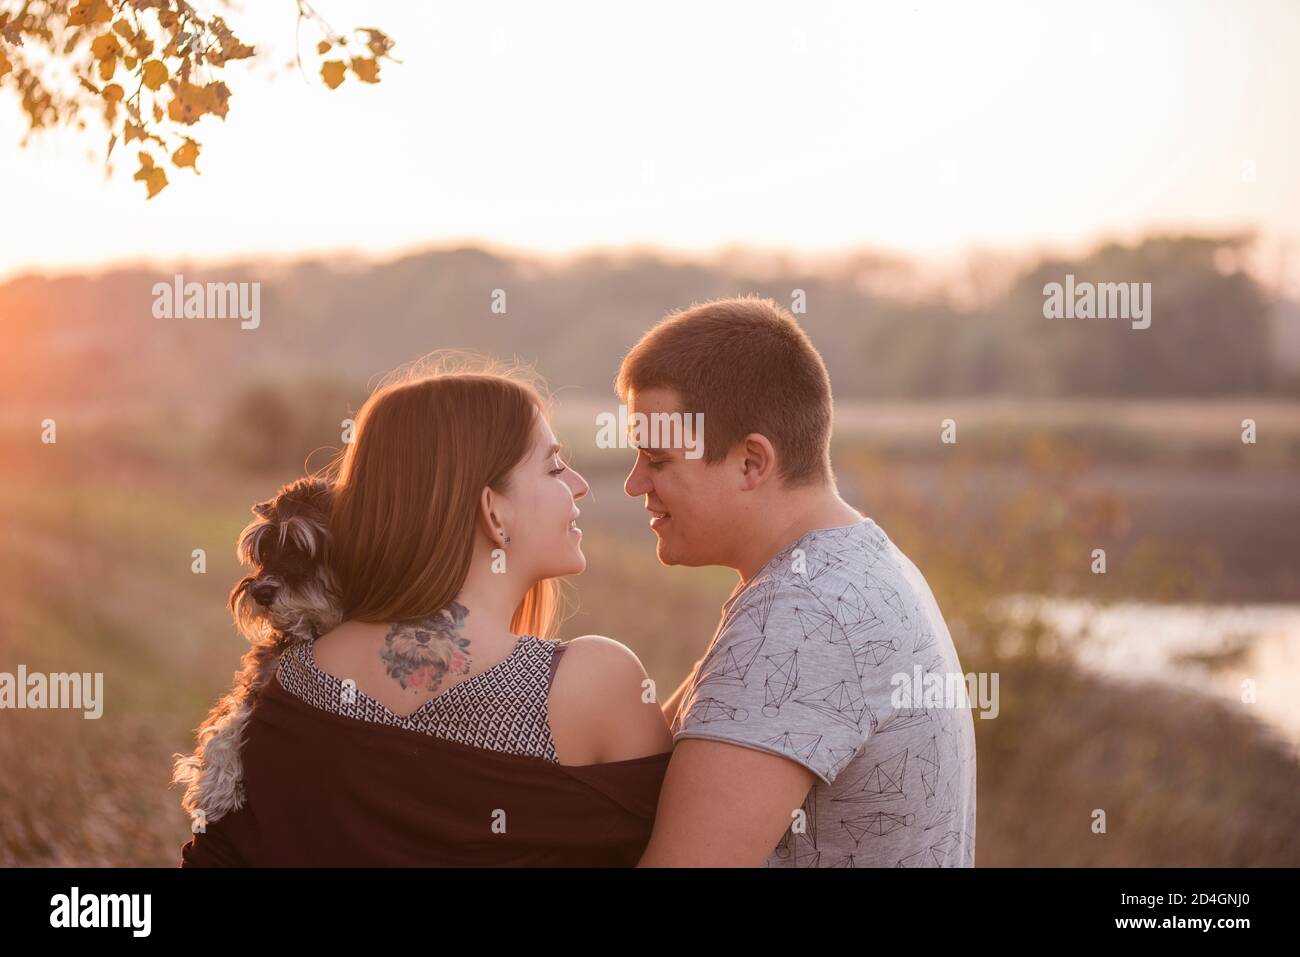 Una coppia in abbracci d'amore, bacia nei raggi del sole d'autunno, con le spalle girate verso la macchina fotografica, tenendo una Schnauzer tra le braccia. Bella ragazza Foto Stock